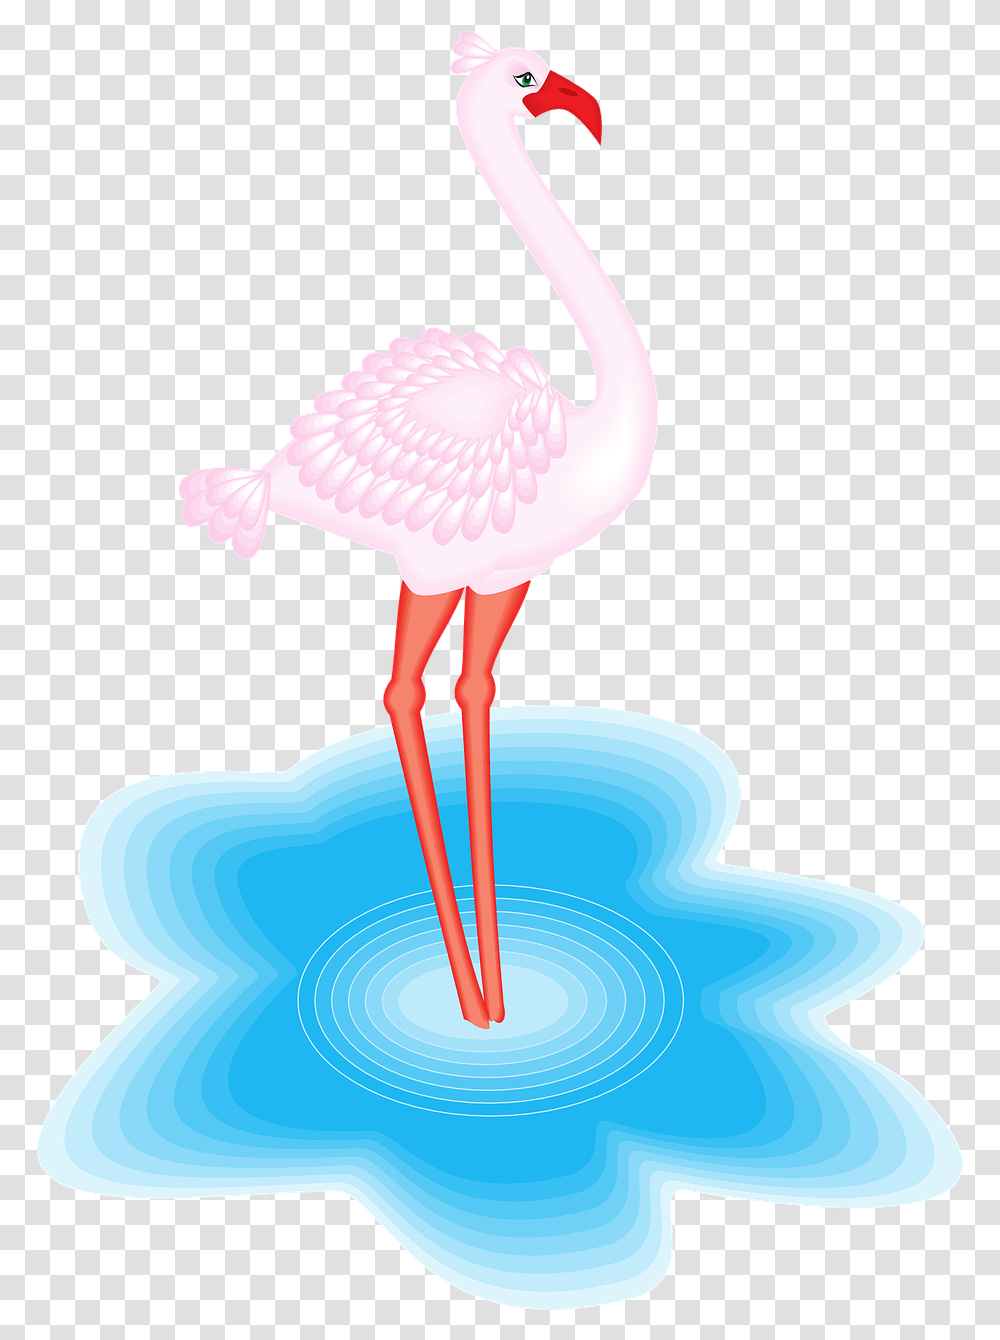 Animales Con Plumas En El Agua, Flamingo, Bird Transparent Png